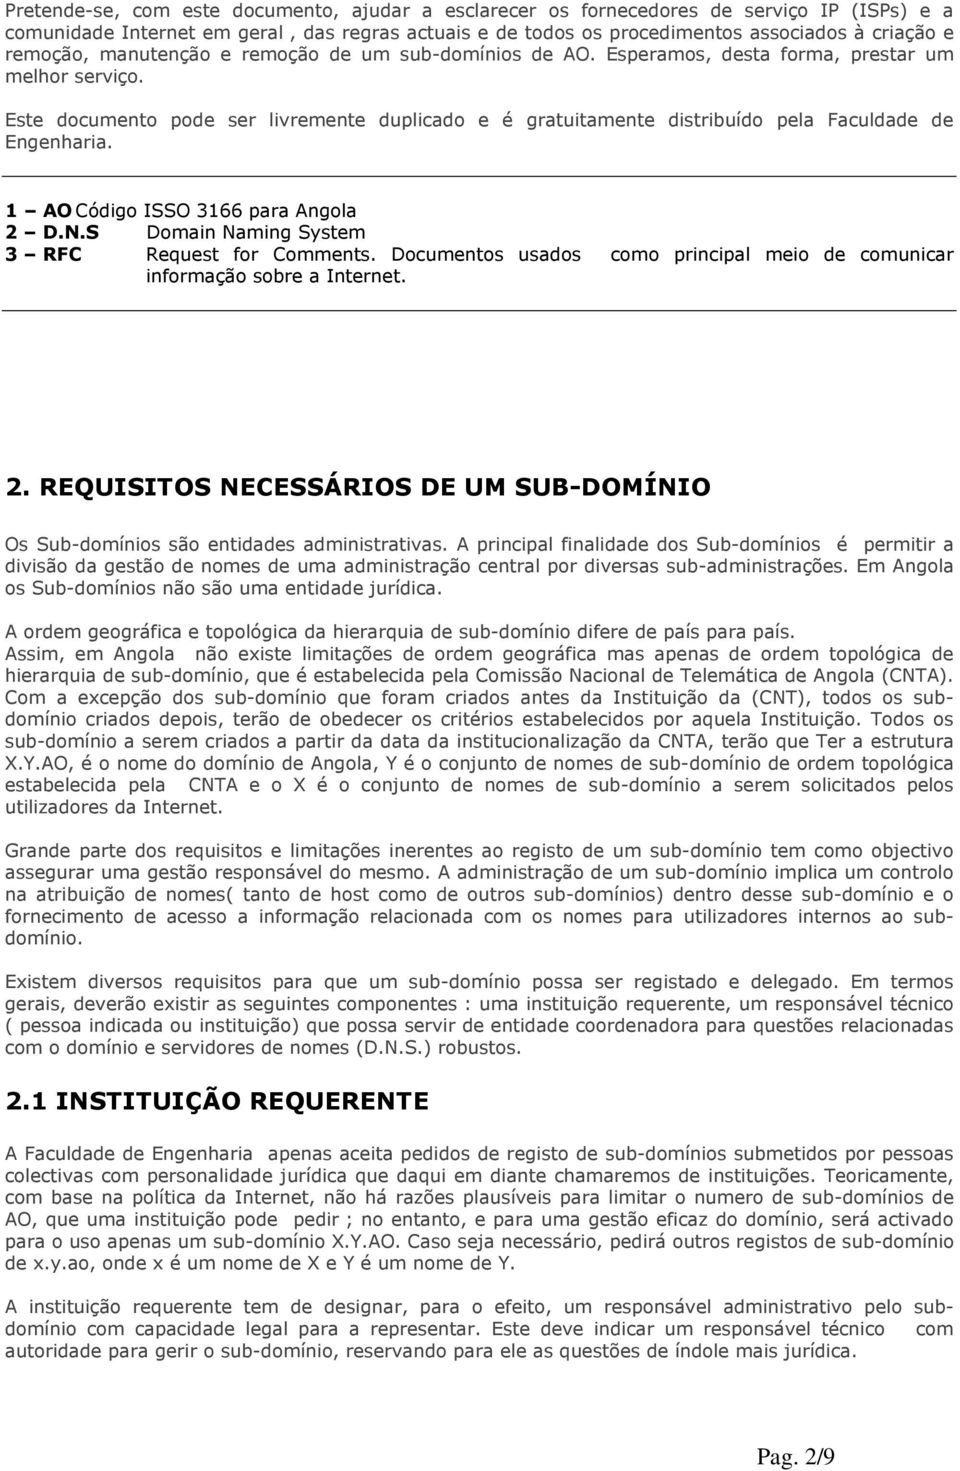 Este documento pode ser livremente duplicado e é gratuitamente distribuído pela Faculdade de Engenharia. 1 AO Código ISSO 3166 para Angola 2 D.N.S Domain Naming System 3 RFC Request for Comments.